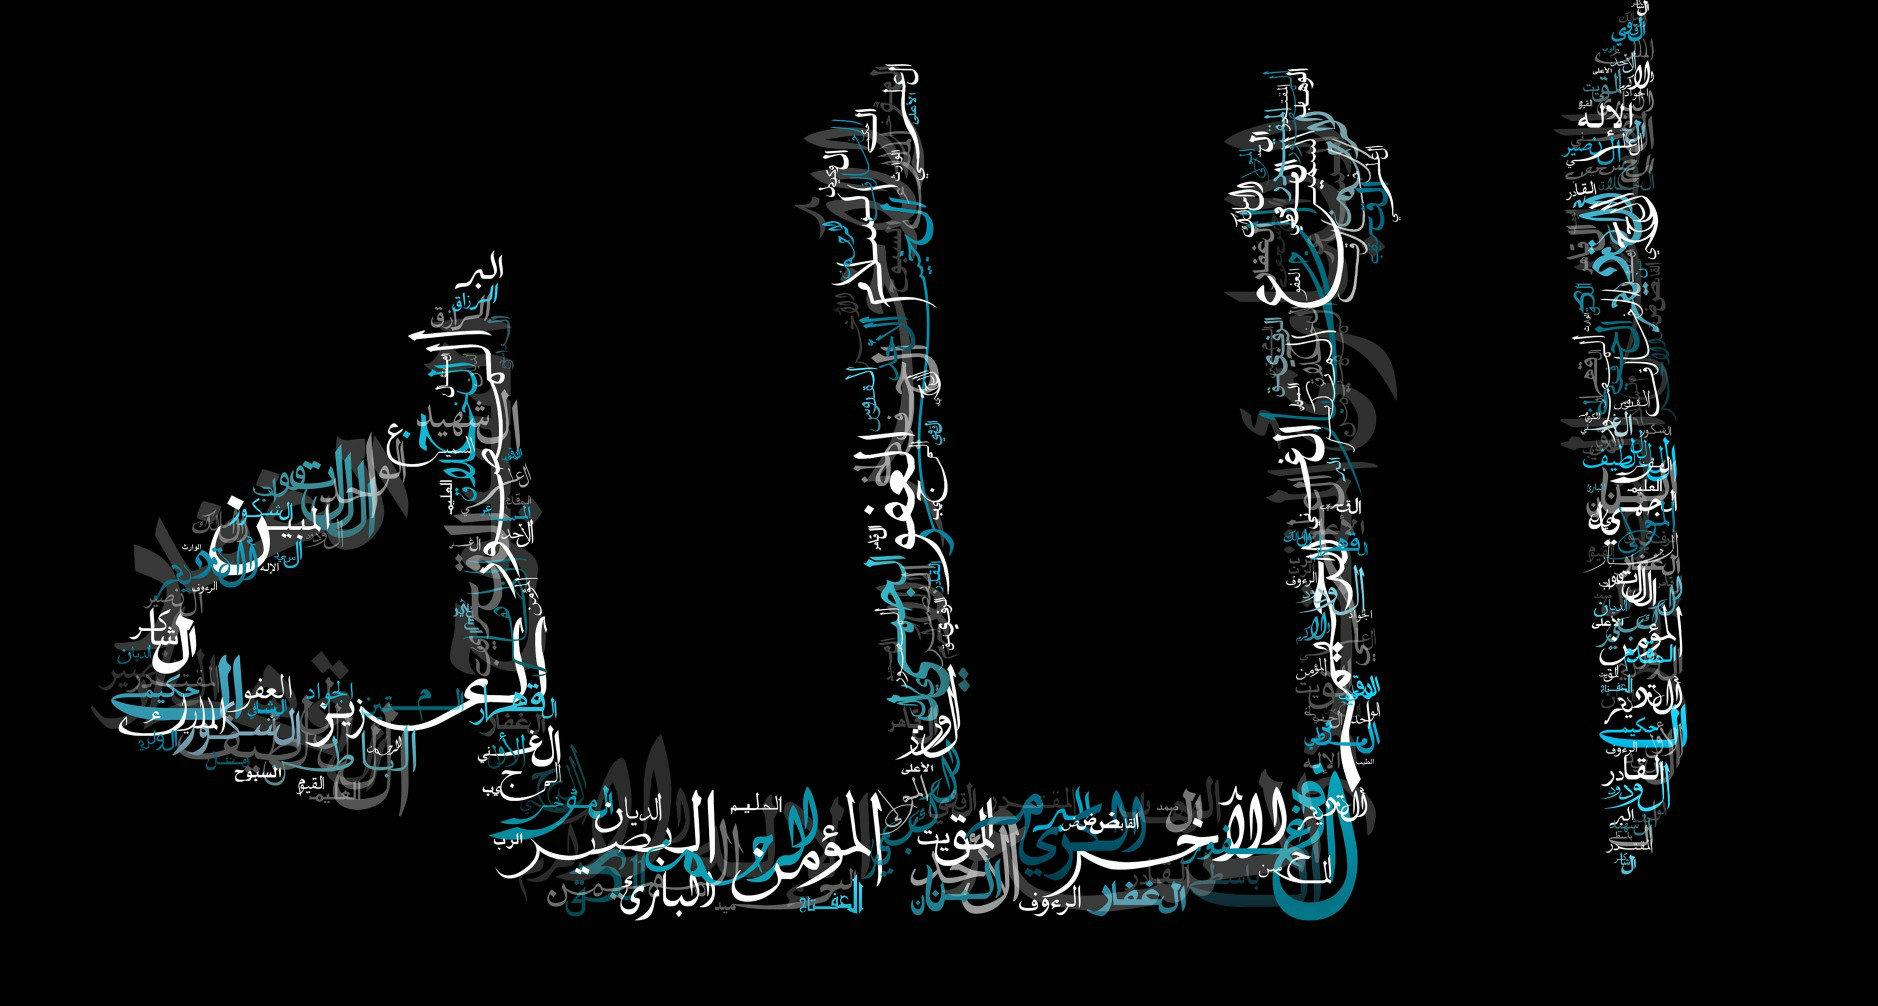 50 99 Names Of Allah Wallpaper On Wallpapersafari